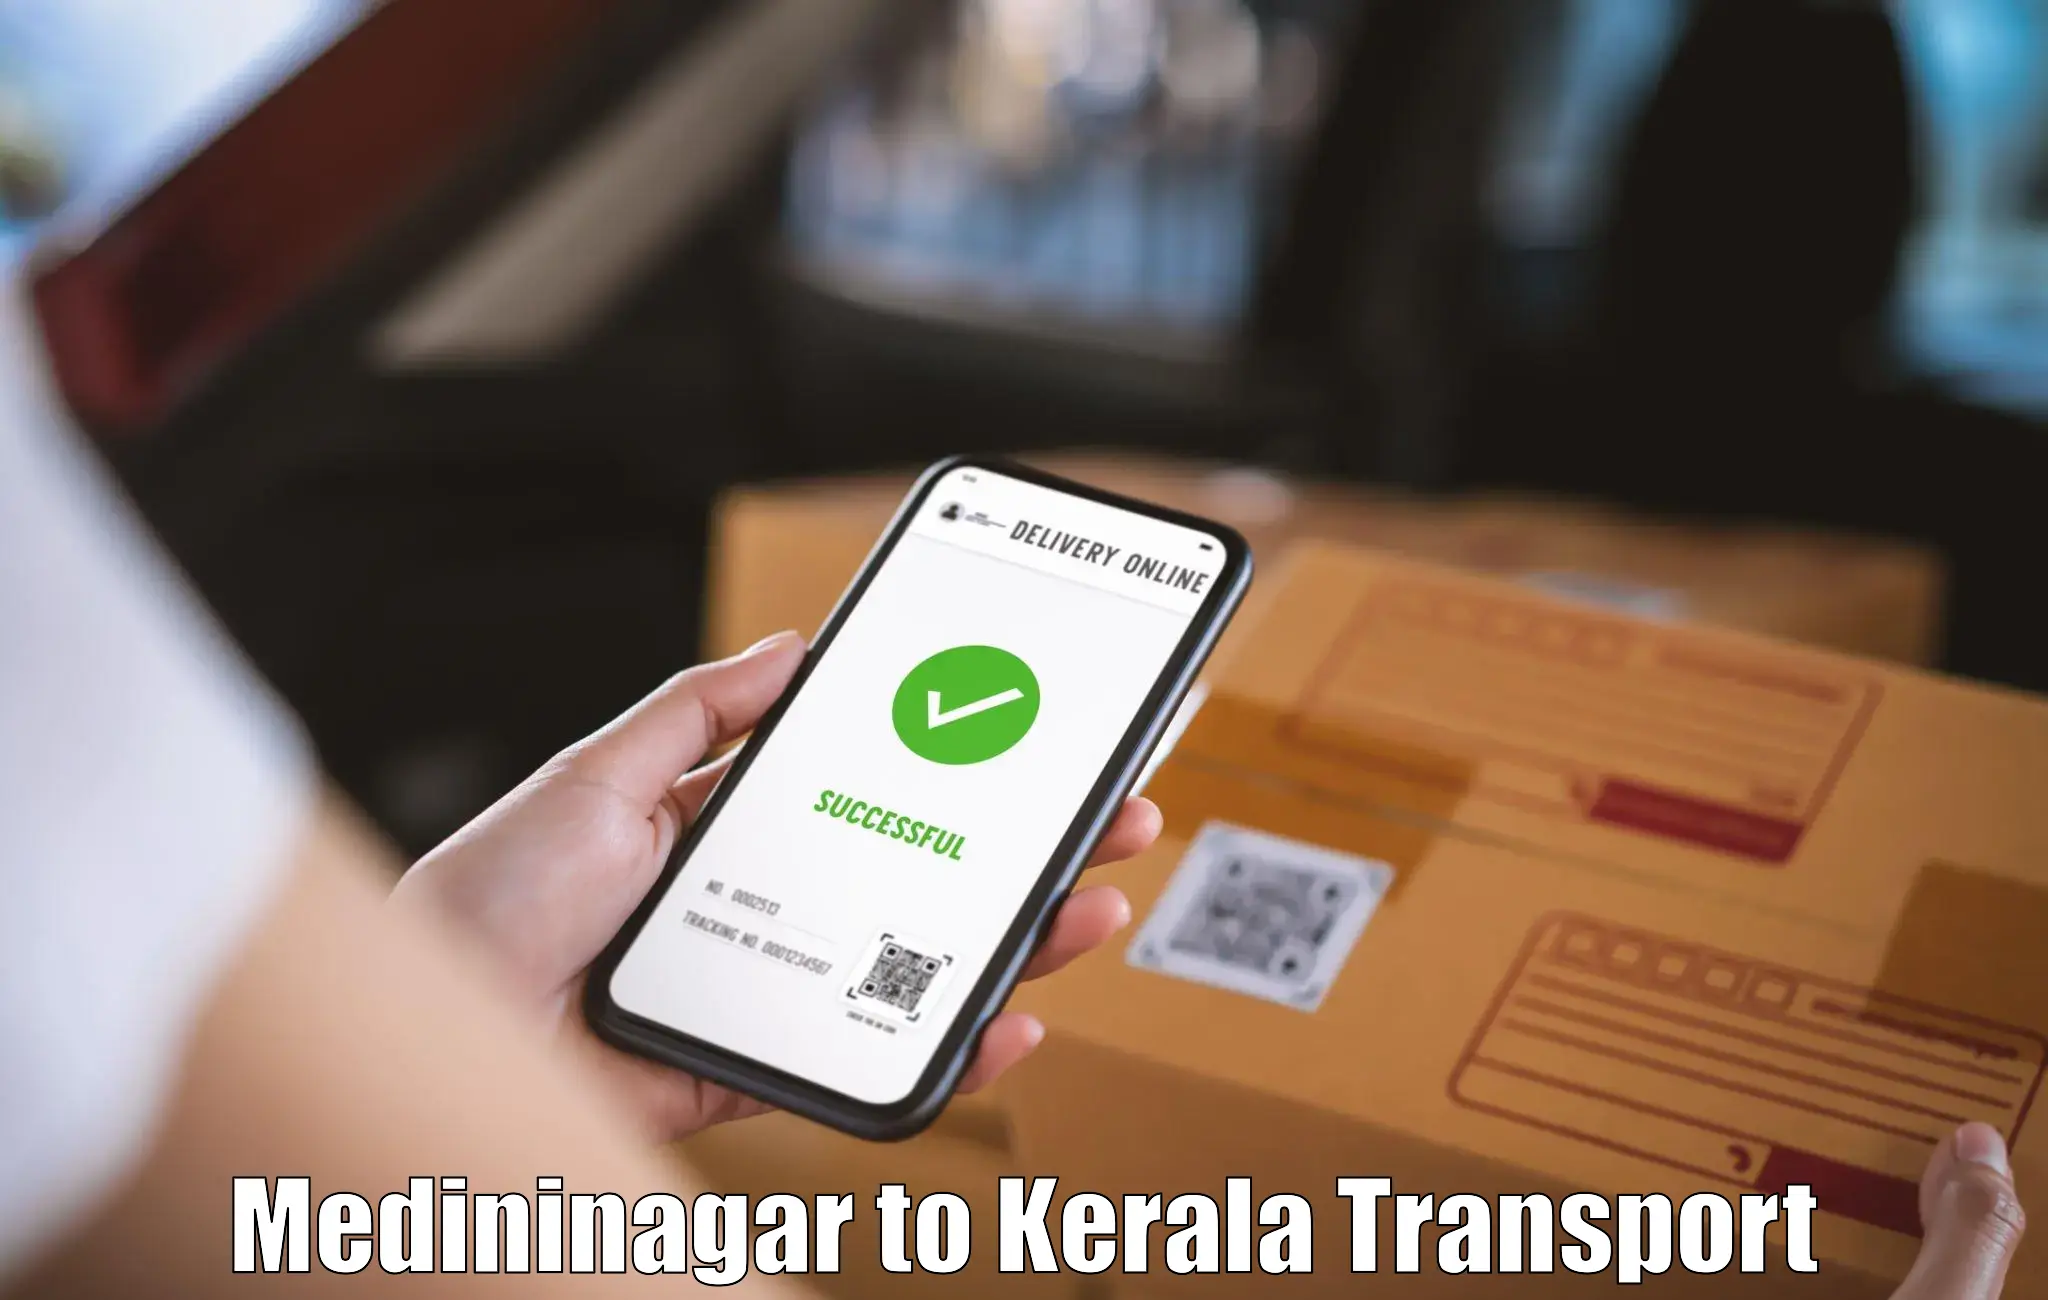 Pick up transport service Medininagar to Kerala